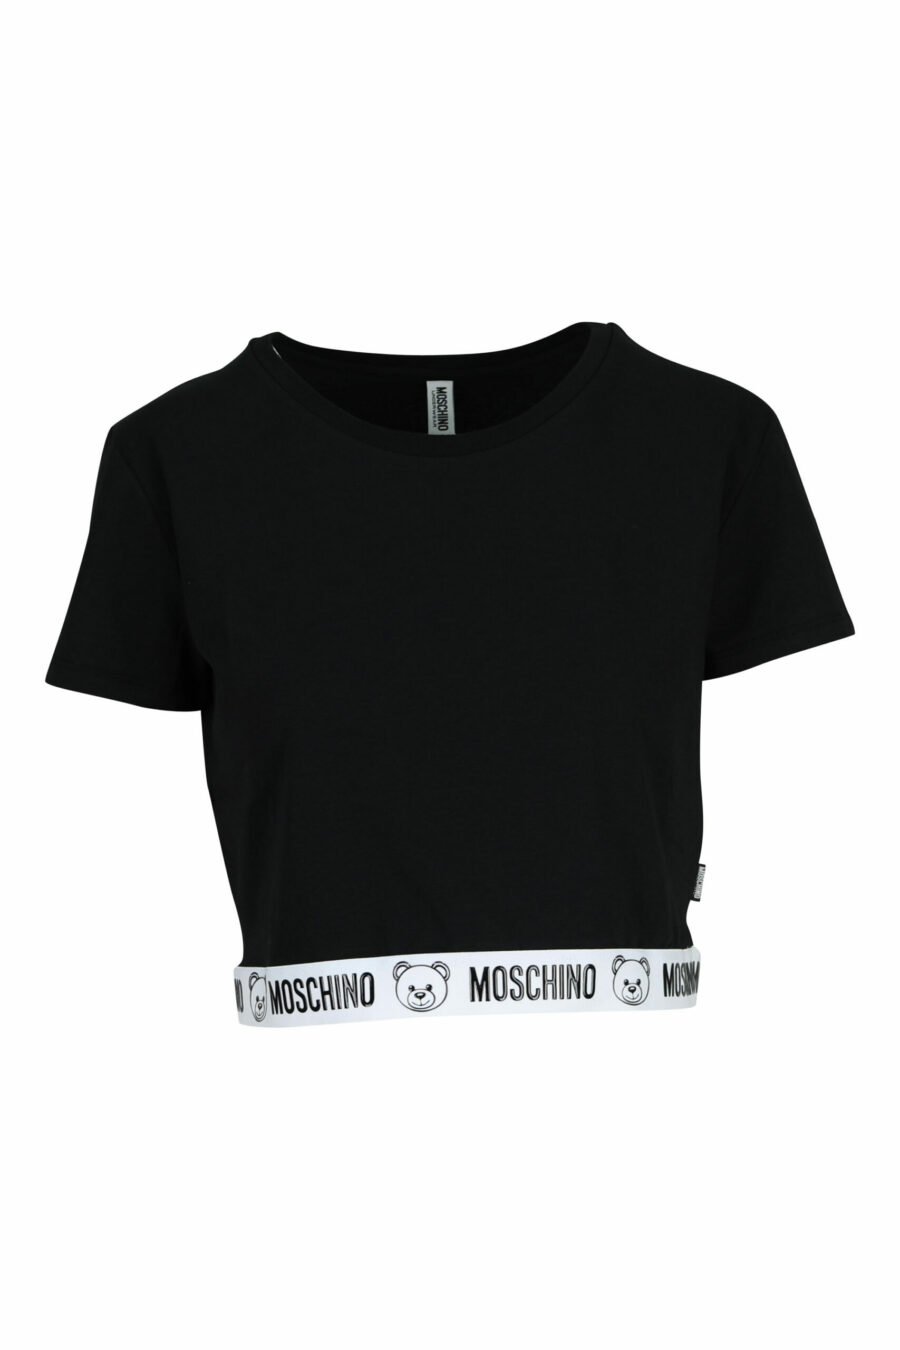 Camiseta negra corta con logo oso en cinta blanco - 667113355283 scaled